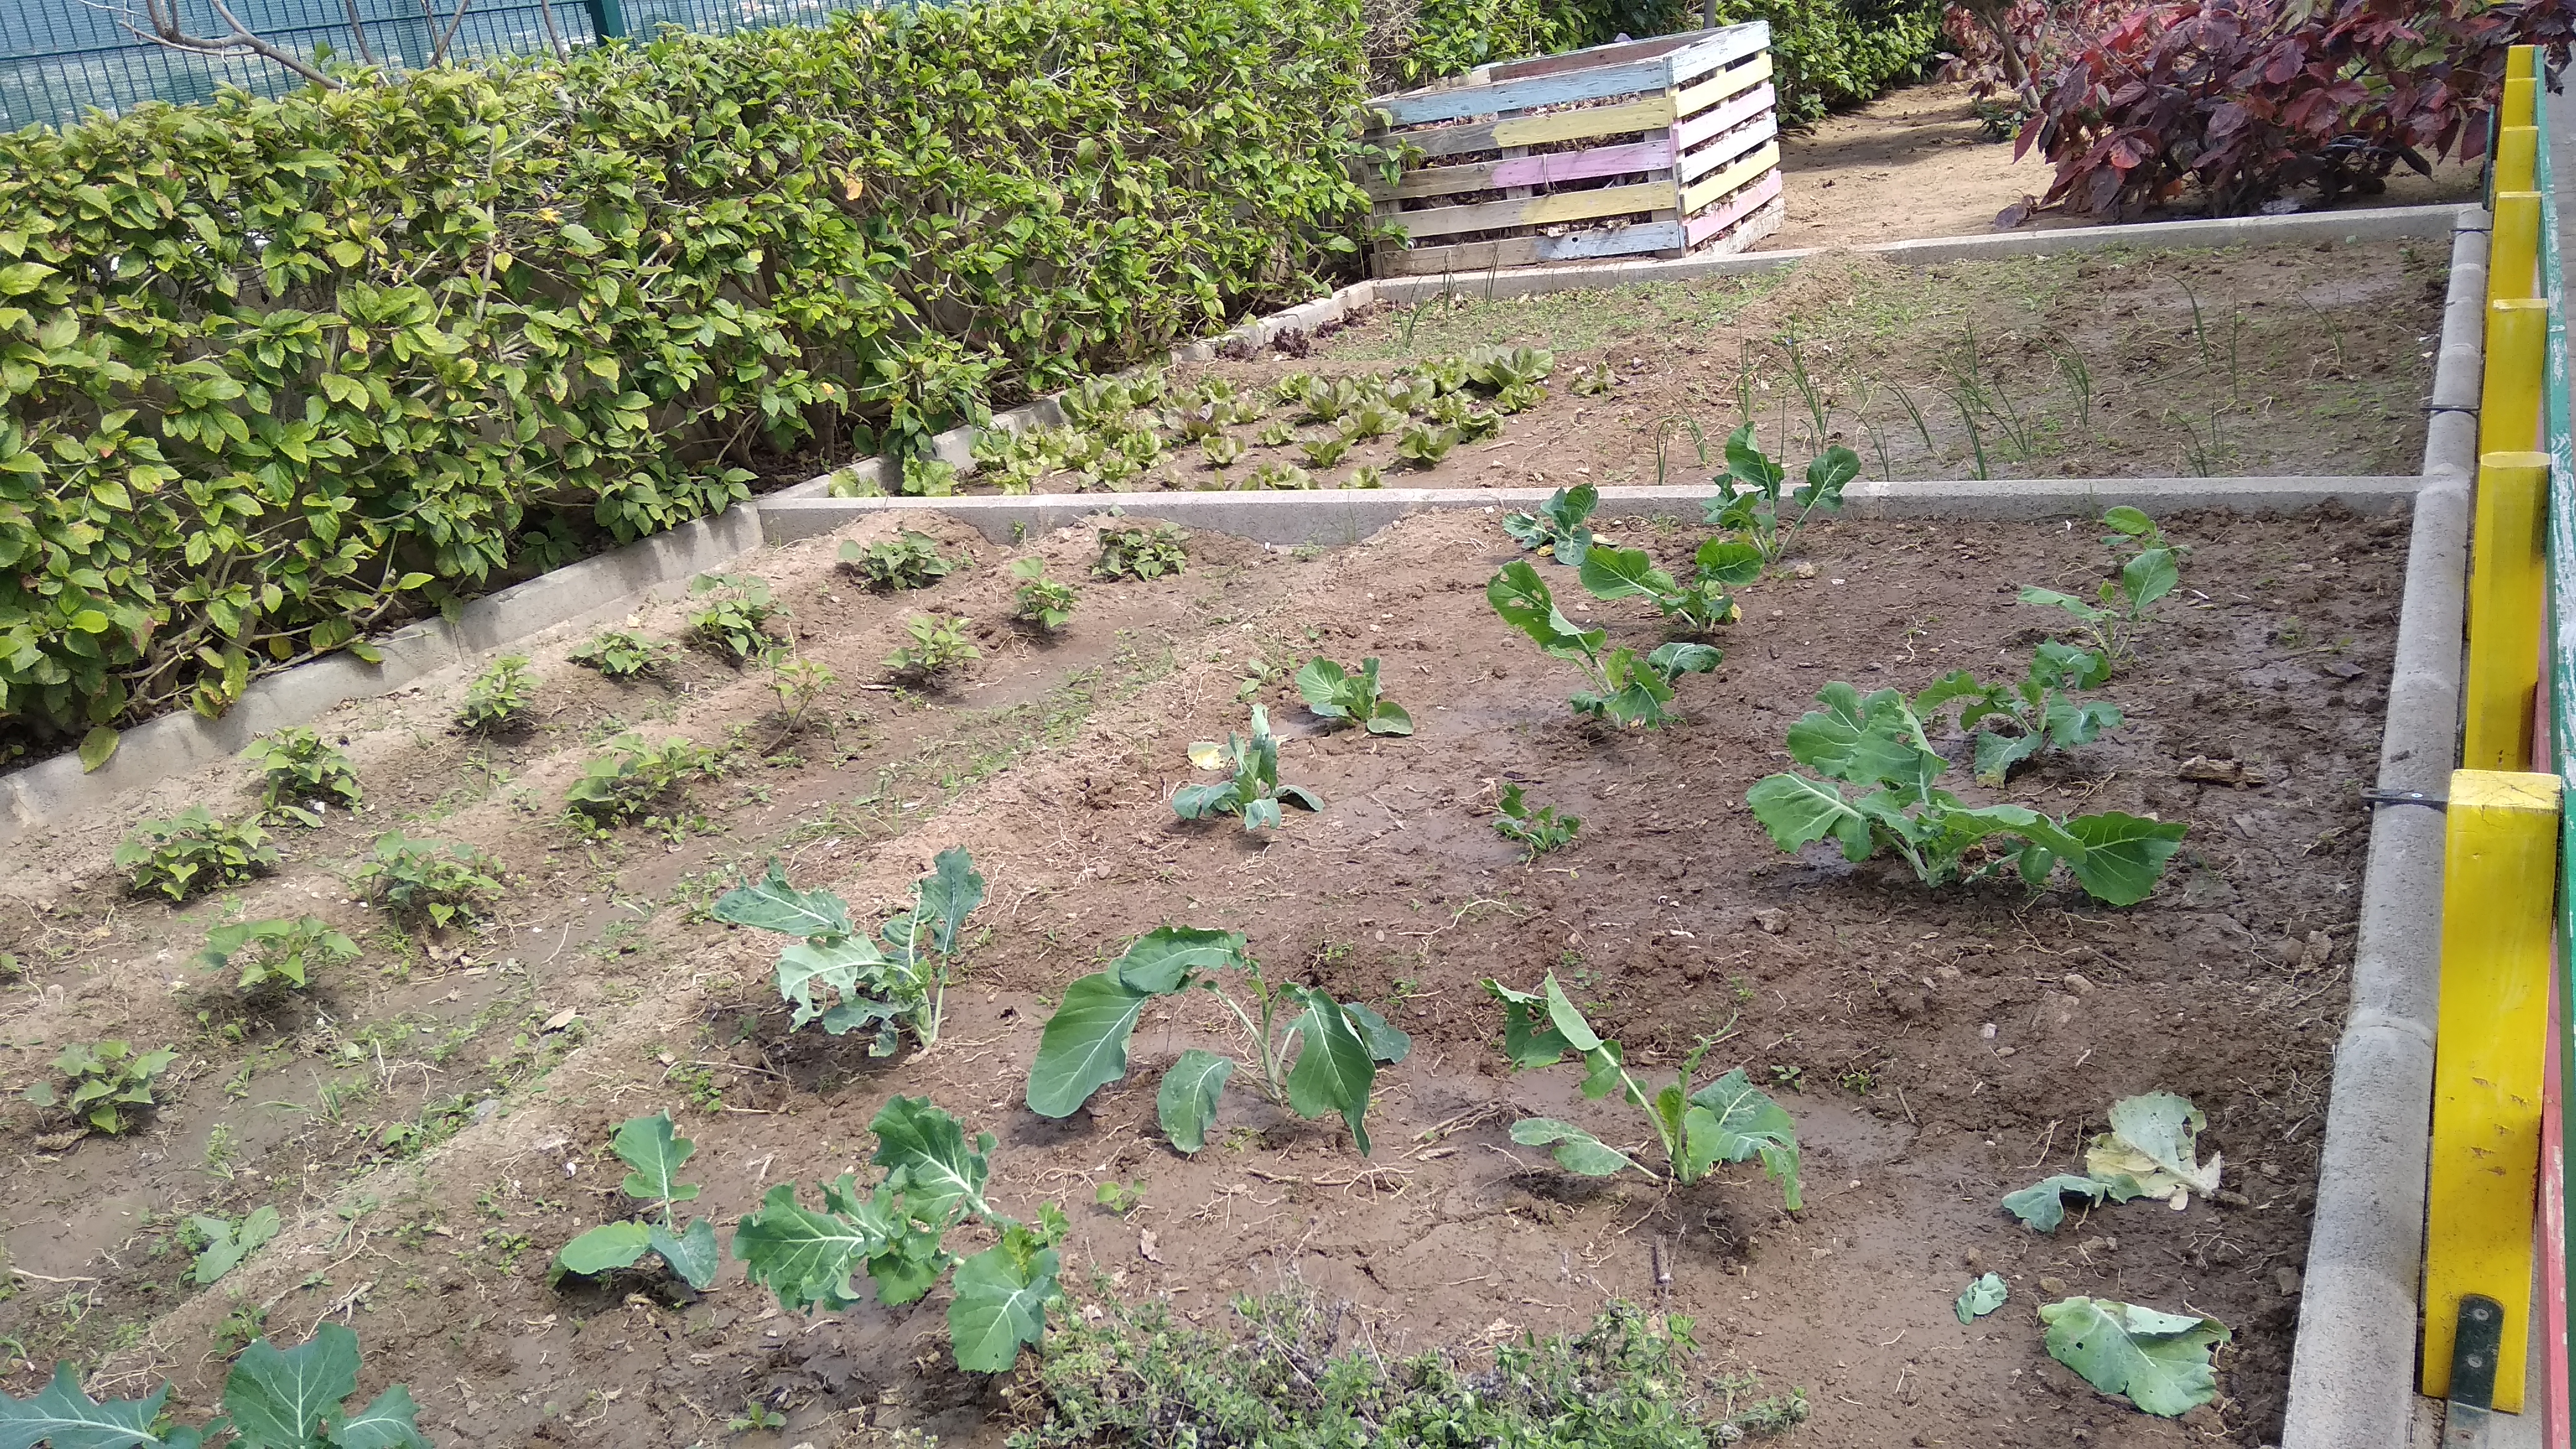 Horta com os produtos hortícolas - canteiros com batata doce, couve, cebolinho e alface (produtos na fase de crescimento)